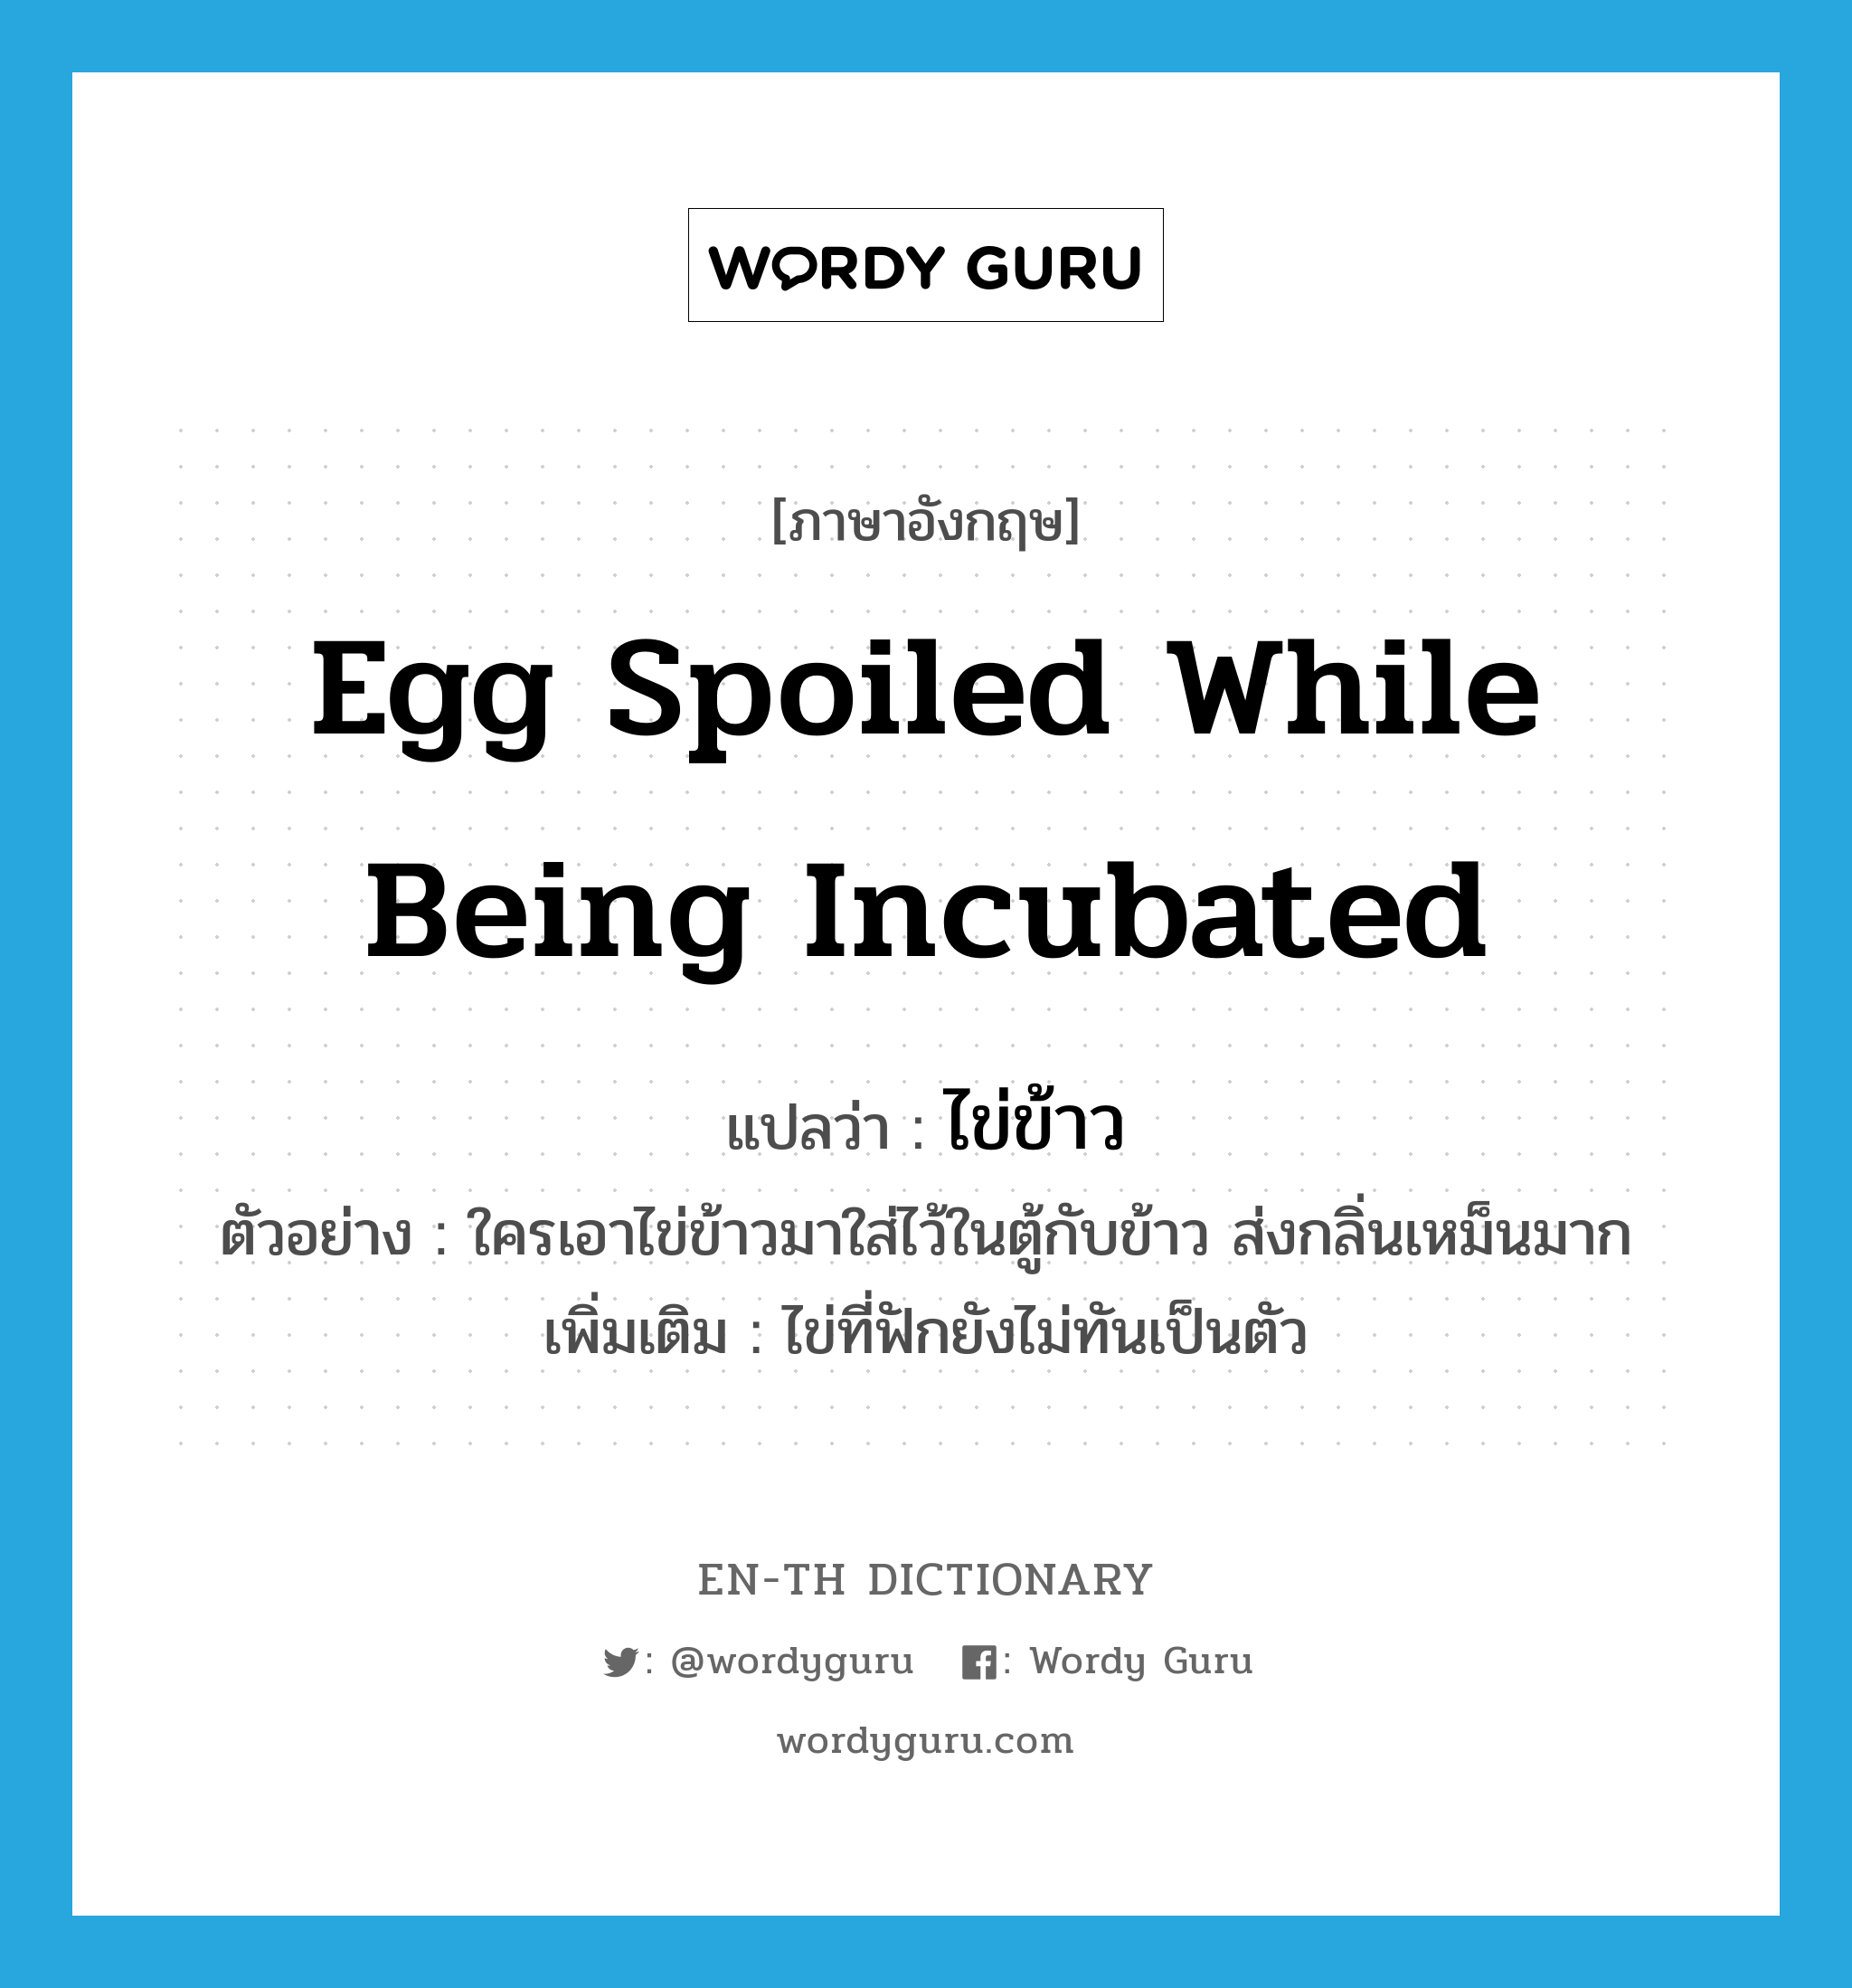 egg spoiled while being incubated แปลว่า?, คำศัพท์ภาษาอังกฤษ egg spoiled while being incubated แปลว่า ไข่ข้าว ประเภท N ตัวอย่าง ใครเอาไข่ข้าวมาใส่ไว้ในตู้กับข้าว ส่งกลิ่นเหม็นมาก เพิ่มเติม ไข่ที่ฟักยังไม่ทันเป็นตัว หมวด N